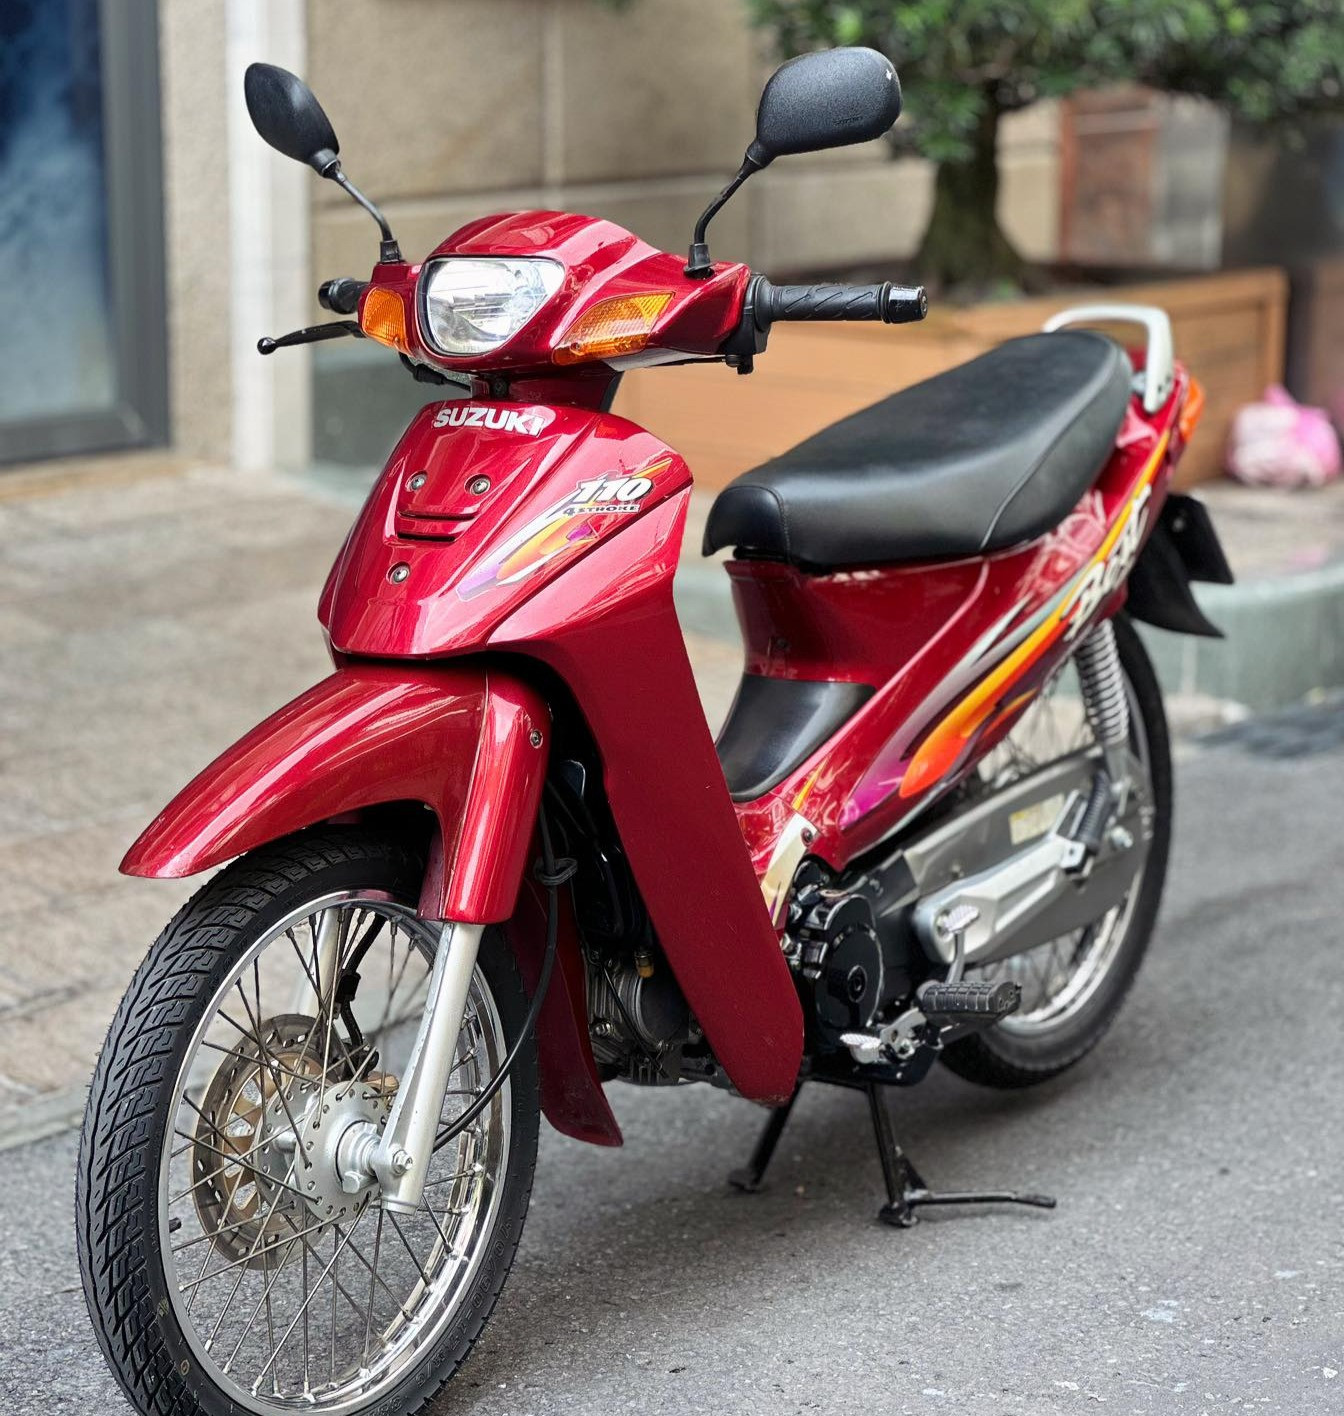 Xe máy Suzuki Best 23 năm tuổi gây ngạc nhiên với giá gần 100 triệu